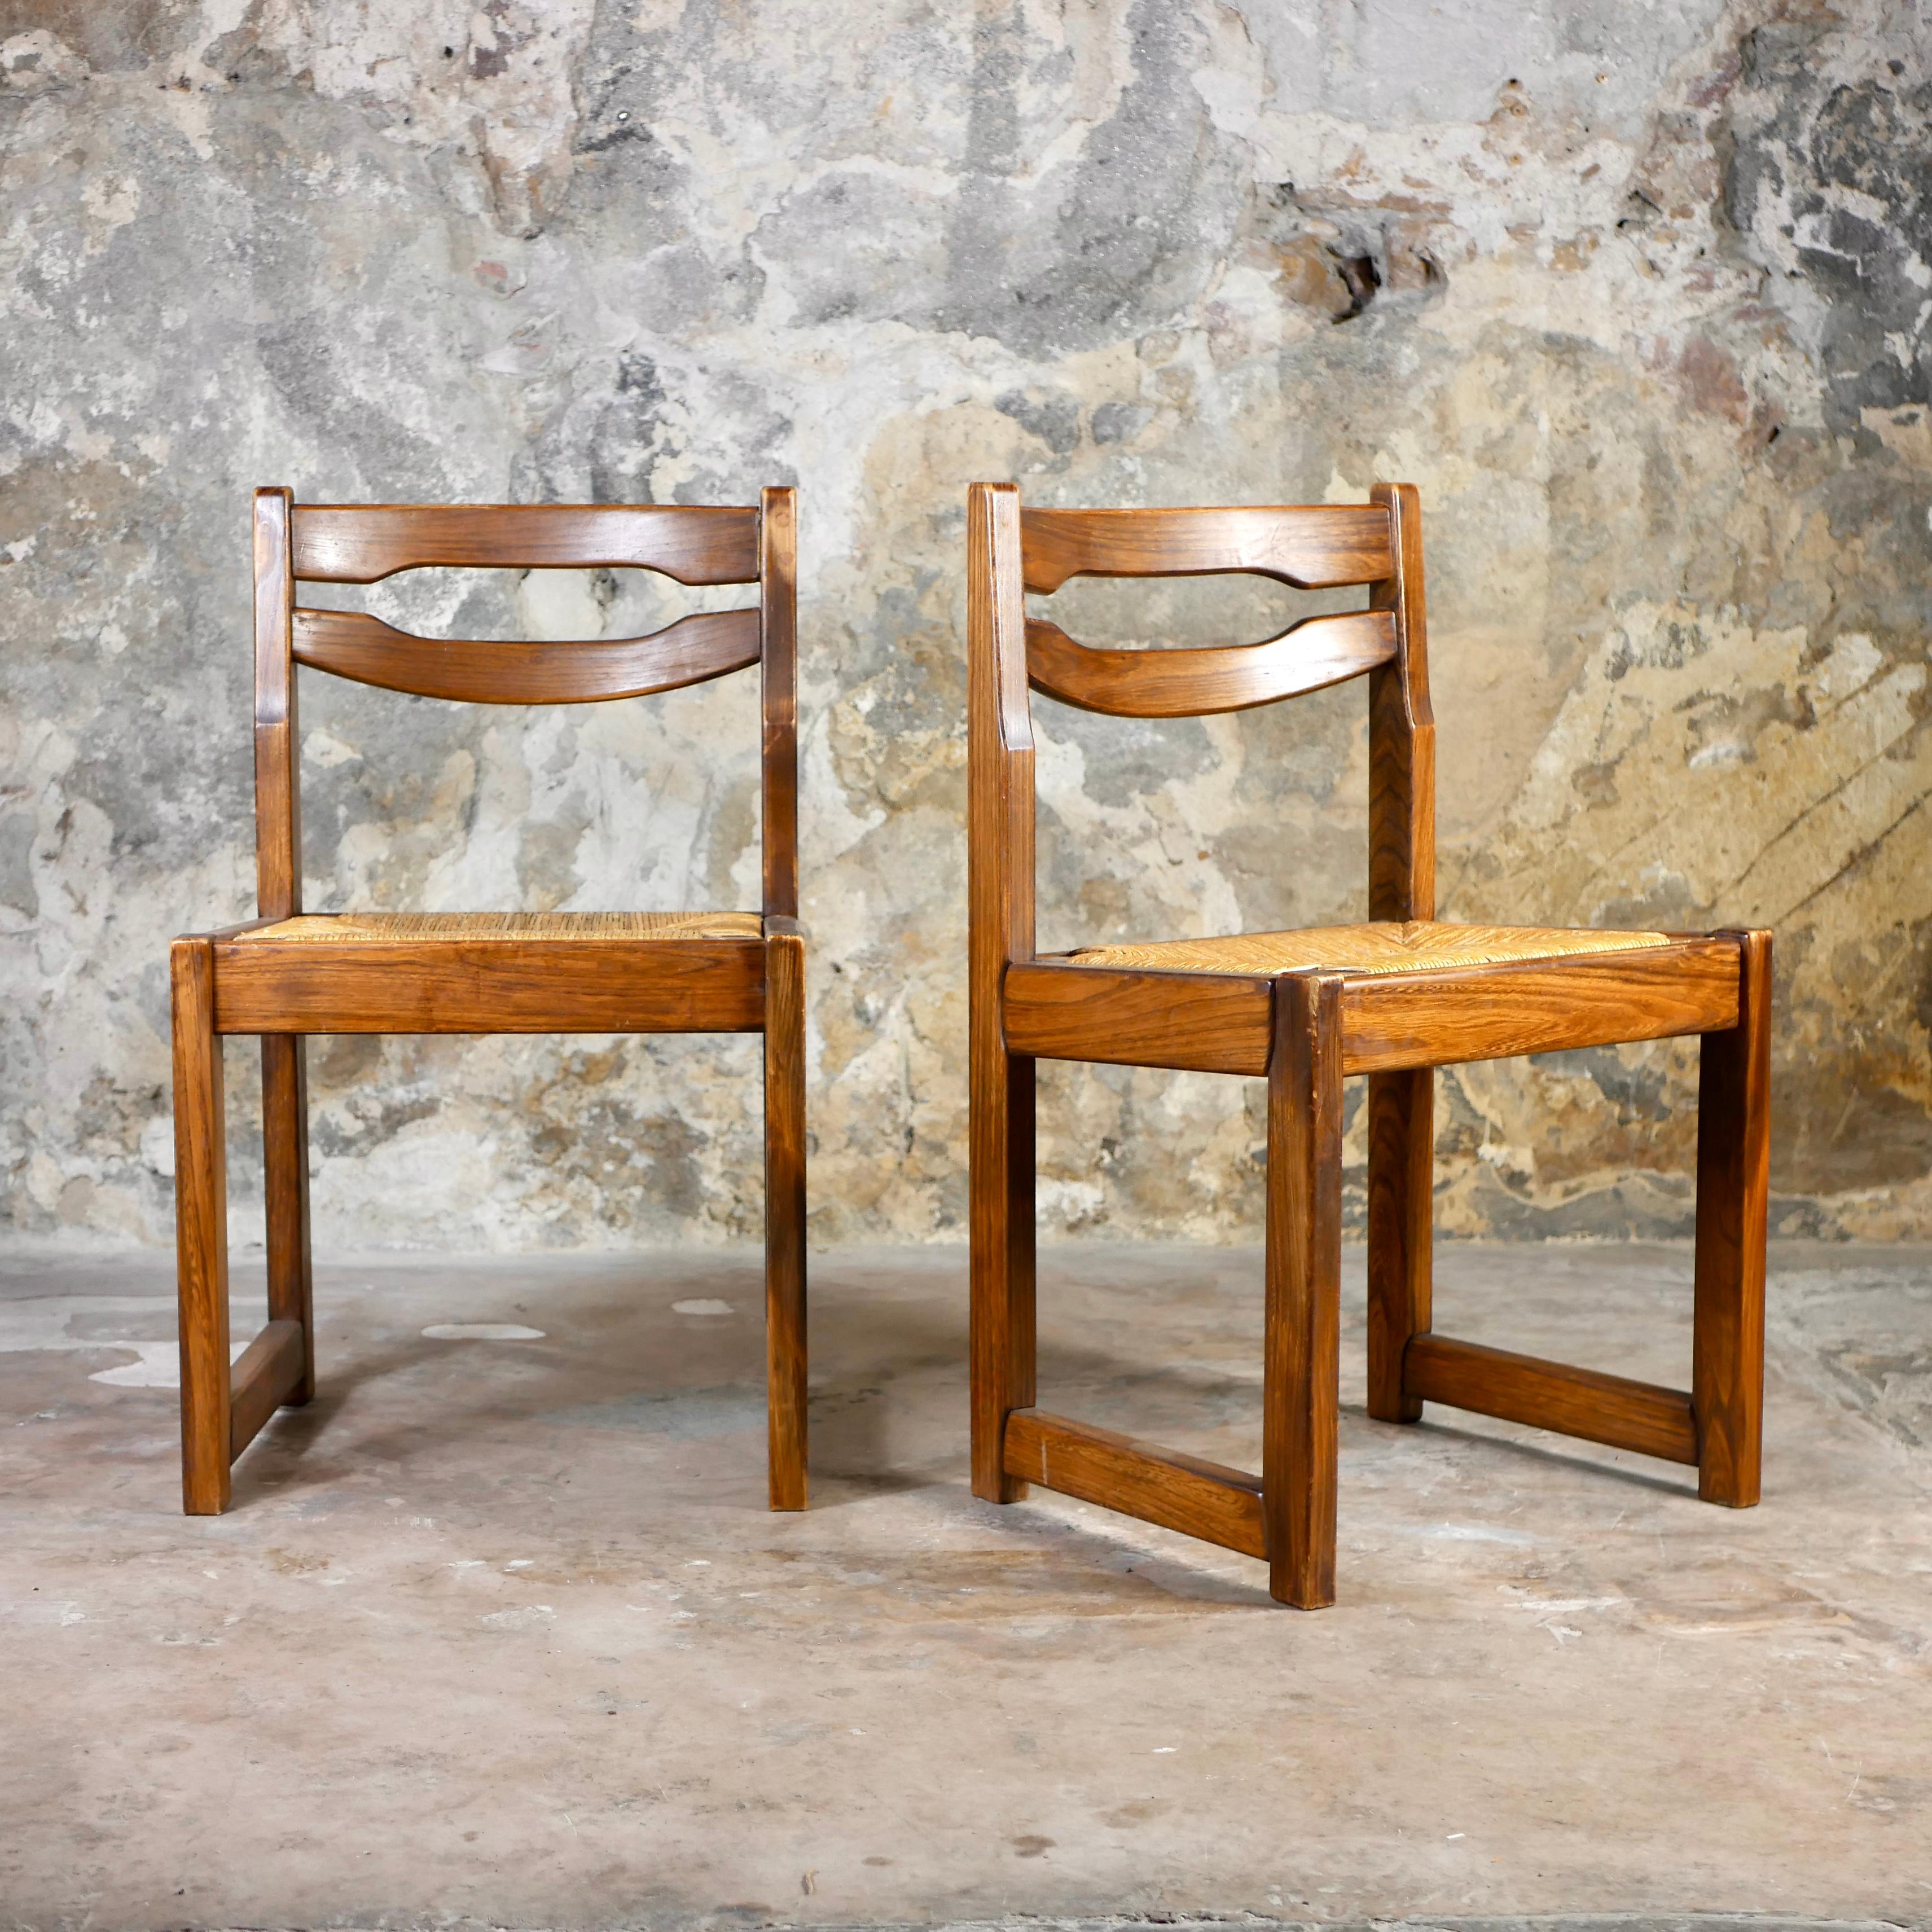 Belle paire de 2 chaises dans le style de Maison Regain, fabriquées en France dans les années 1970.
Siège en corde, structure en orme. 
Nous aimons le grain de bois et la teinte.
Bon état général, corde utilisée, quelques traces de réparation sur le